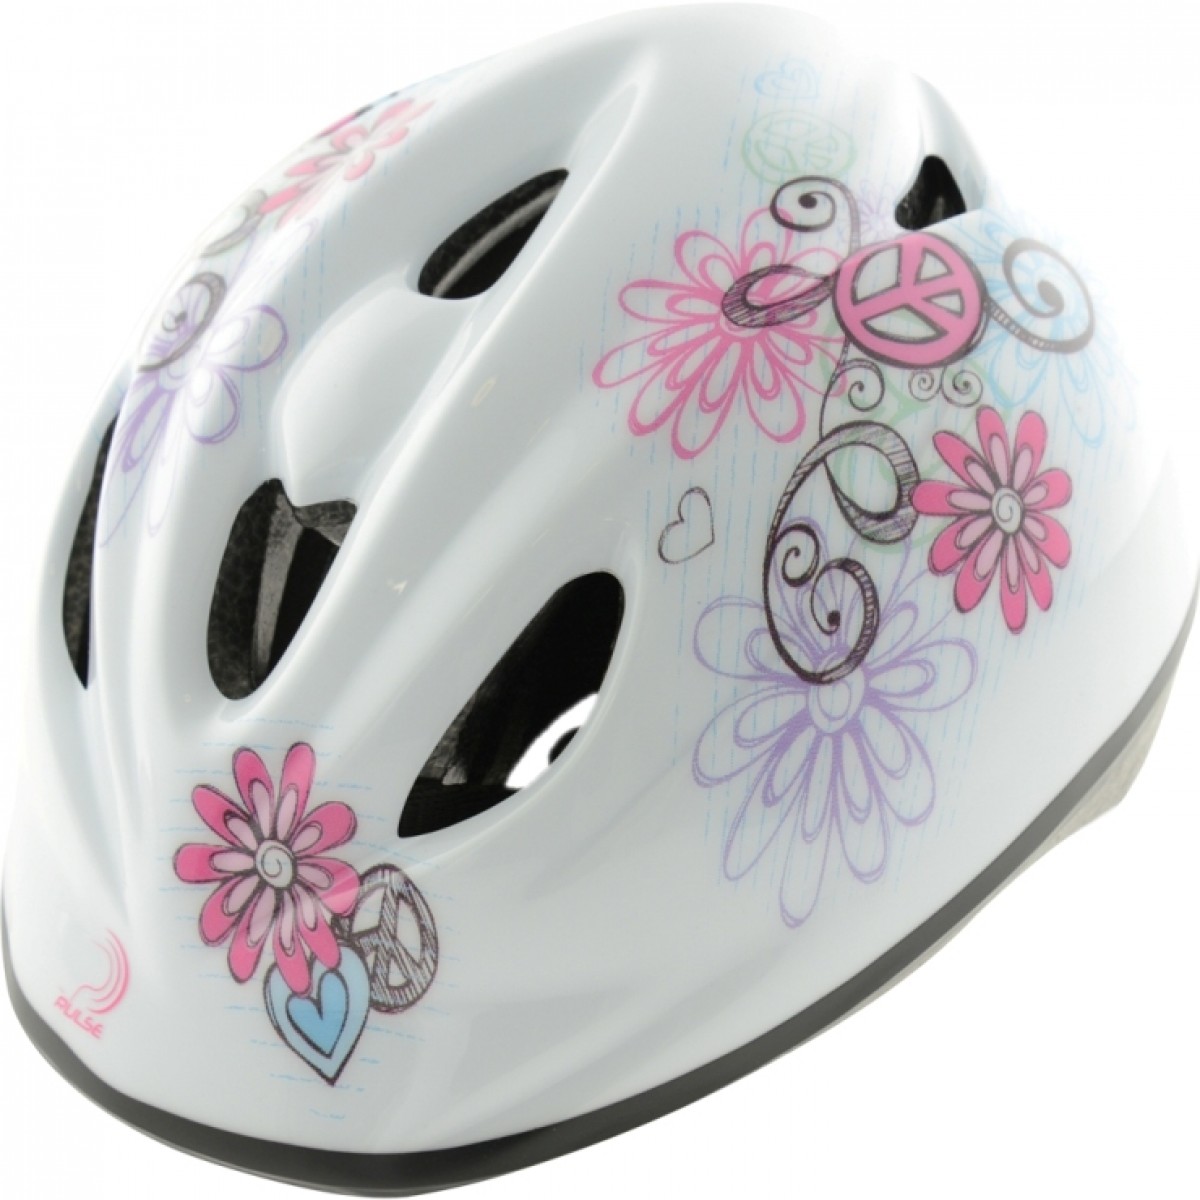 raleigh cycle helmet